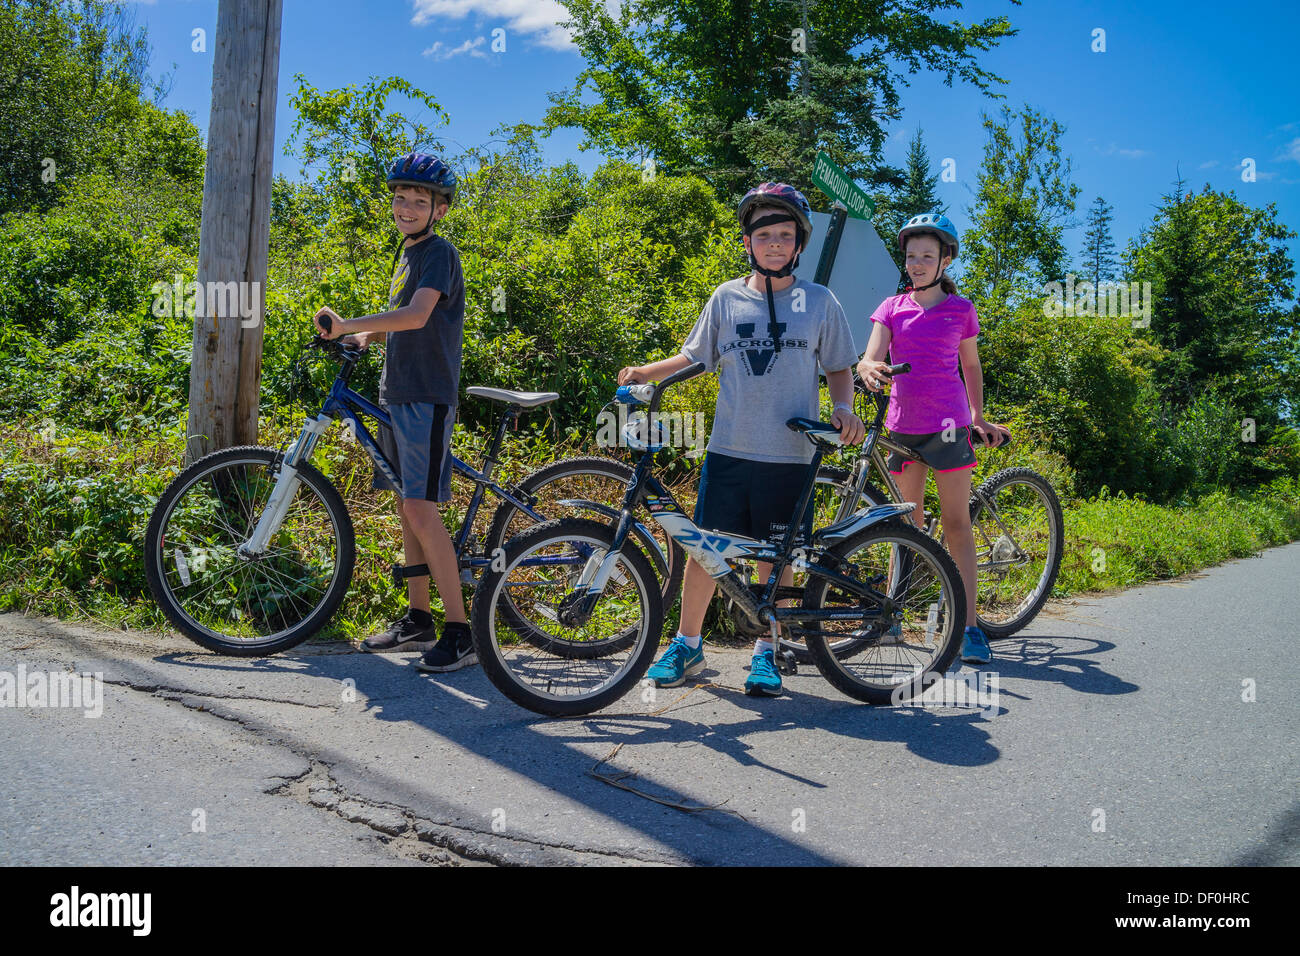 Zwei 12-13 Jahre alten Jungen und ein Mädchen für einen Moment innehalten und ihre Fahrräder während ihrer Sommerferien von der Schule stehen. Stockfoto